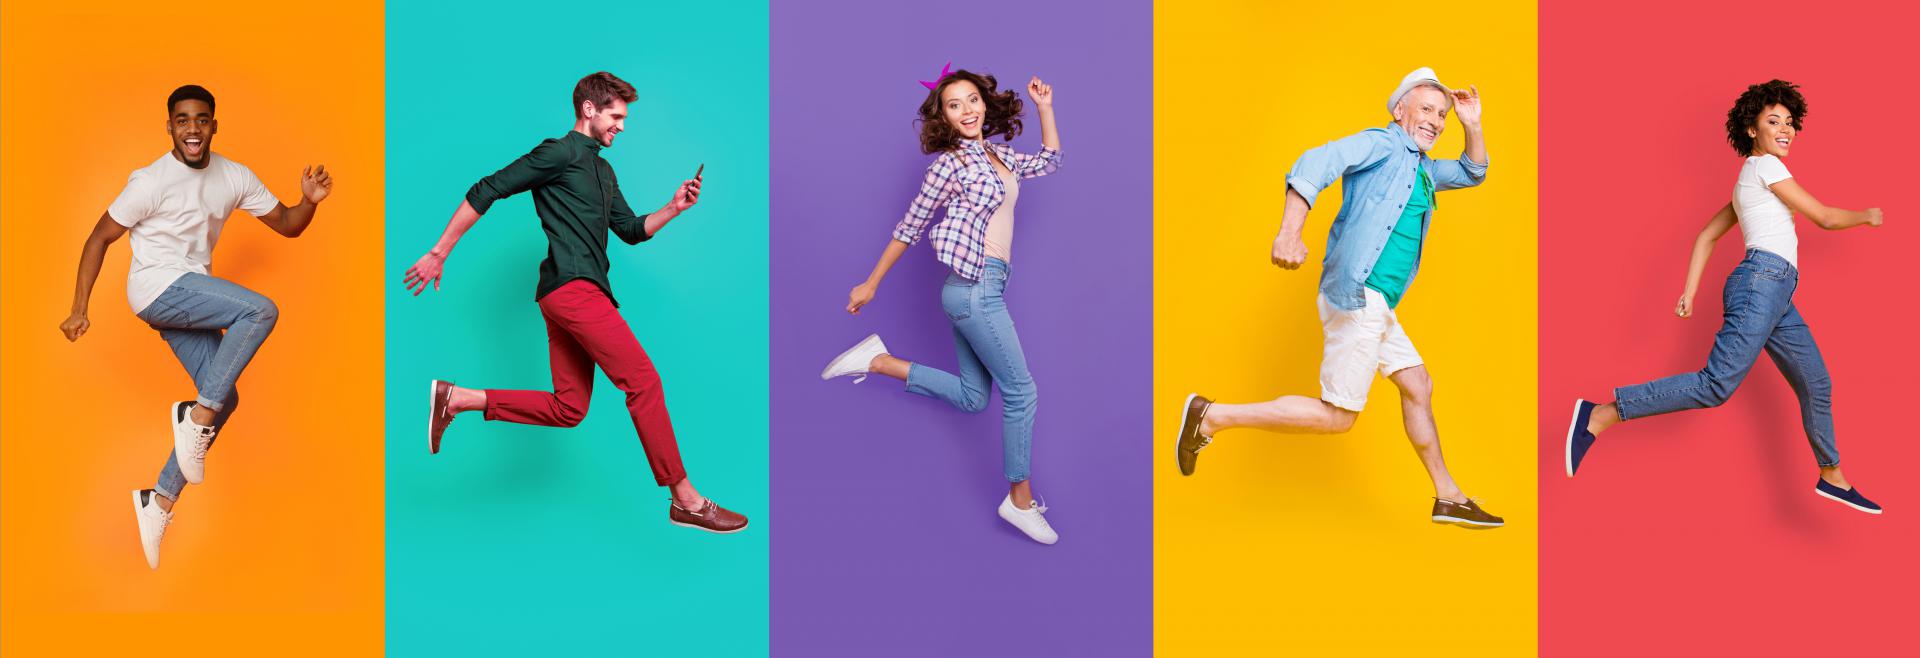 5 Springende mensen met kleurrijke achtergrond